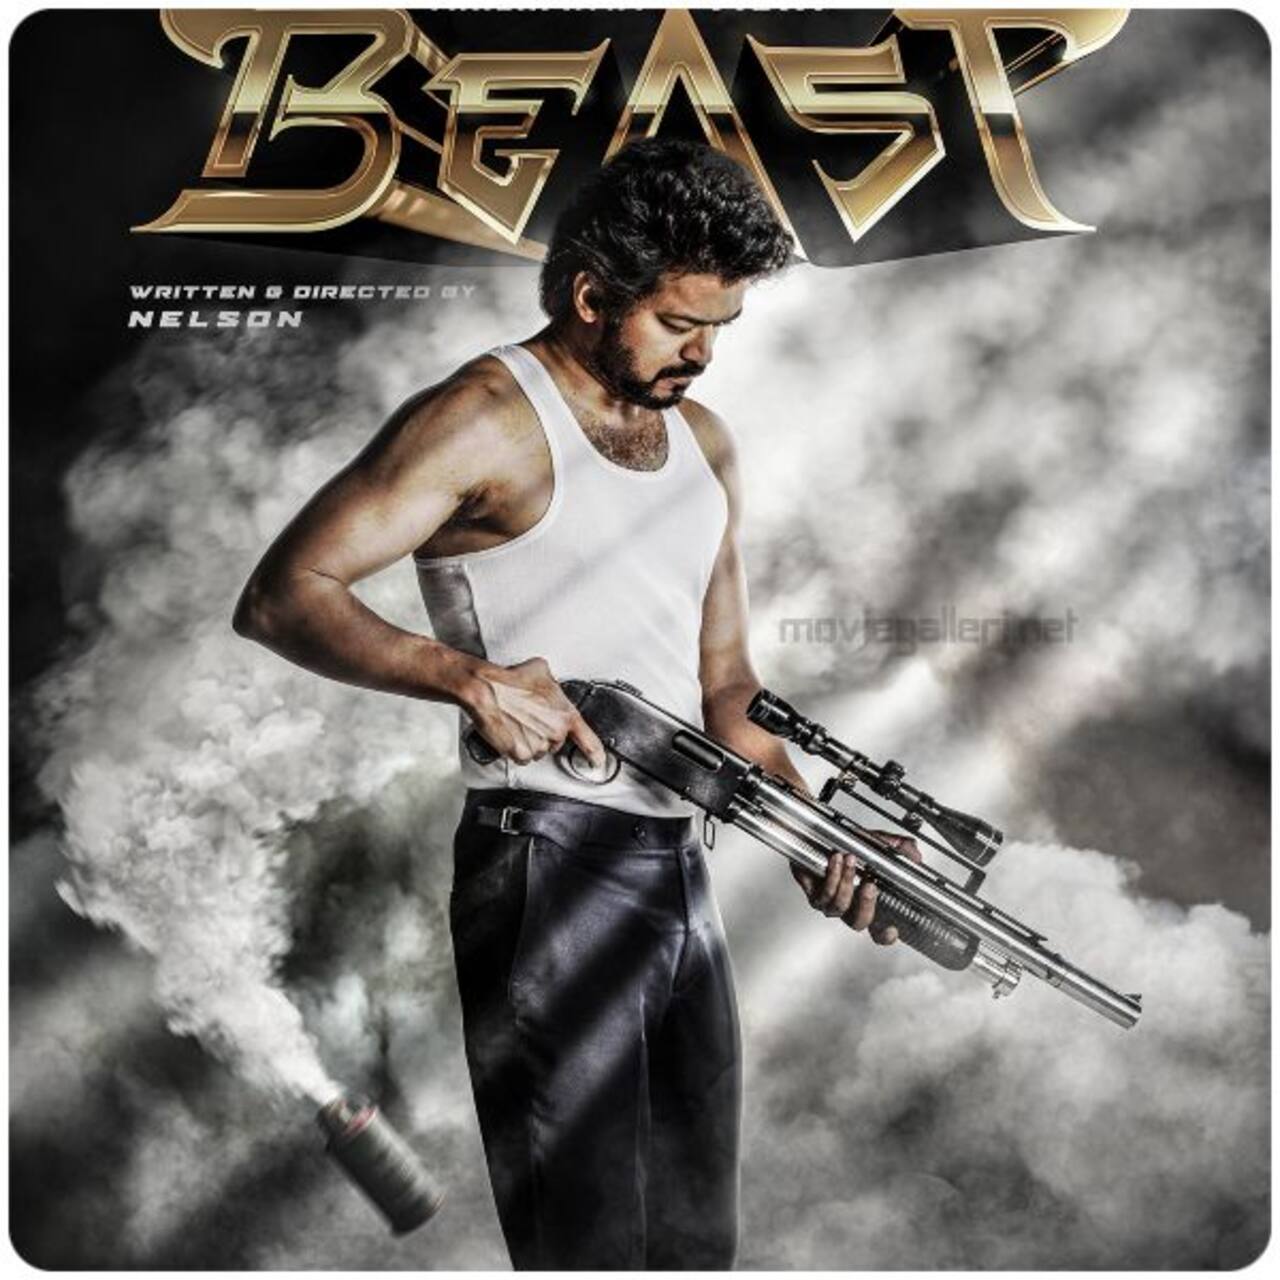 बीस्ट (Beast) भी हो गई थी हिंदी थियेटर्स में ढेर